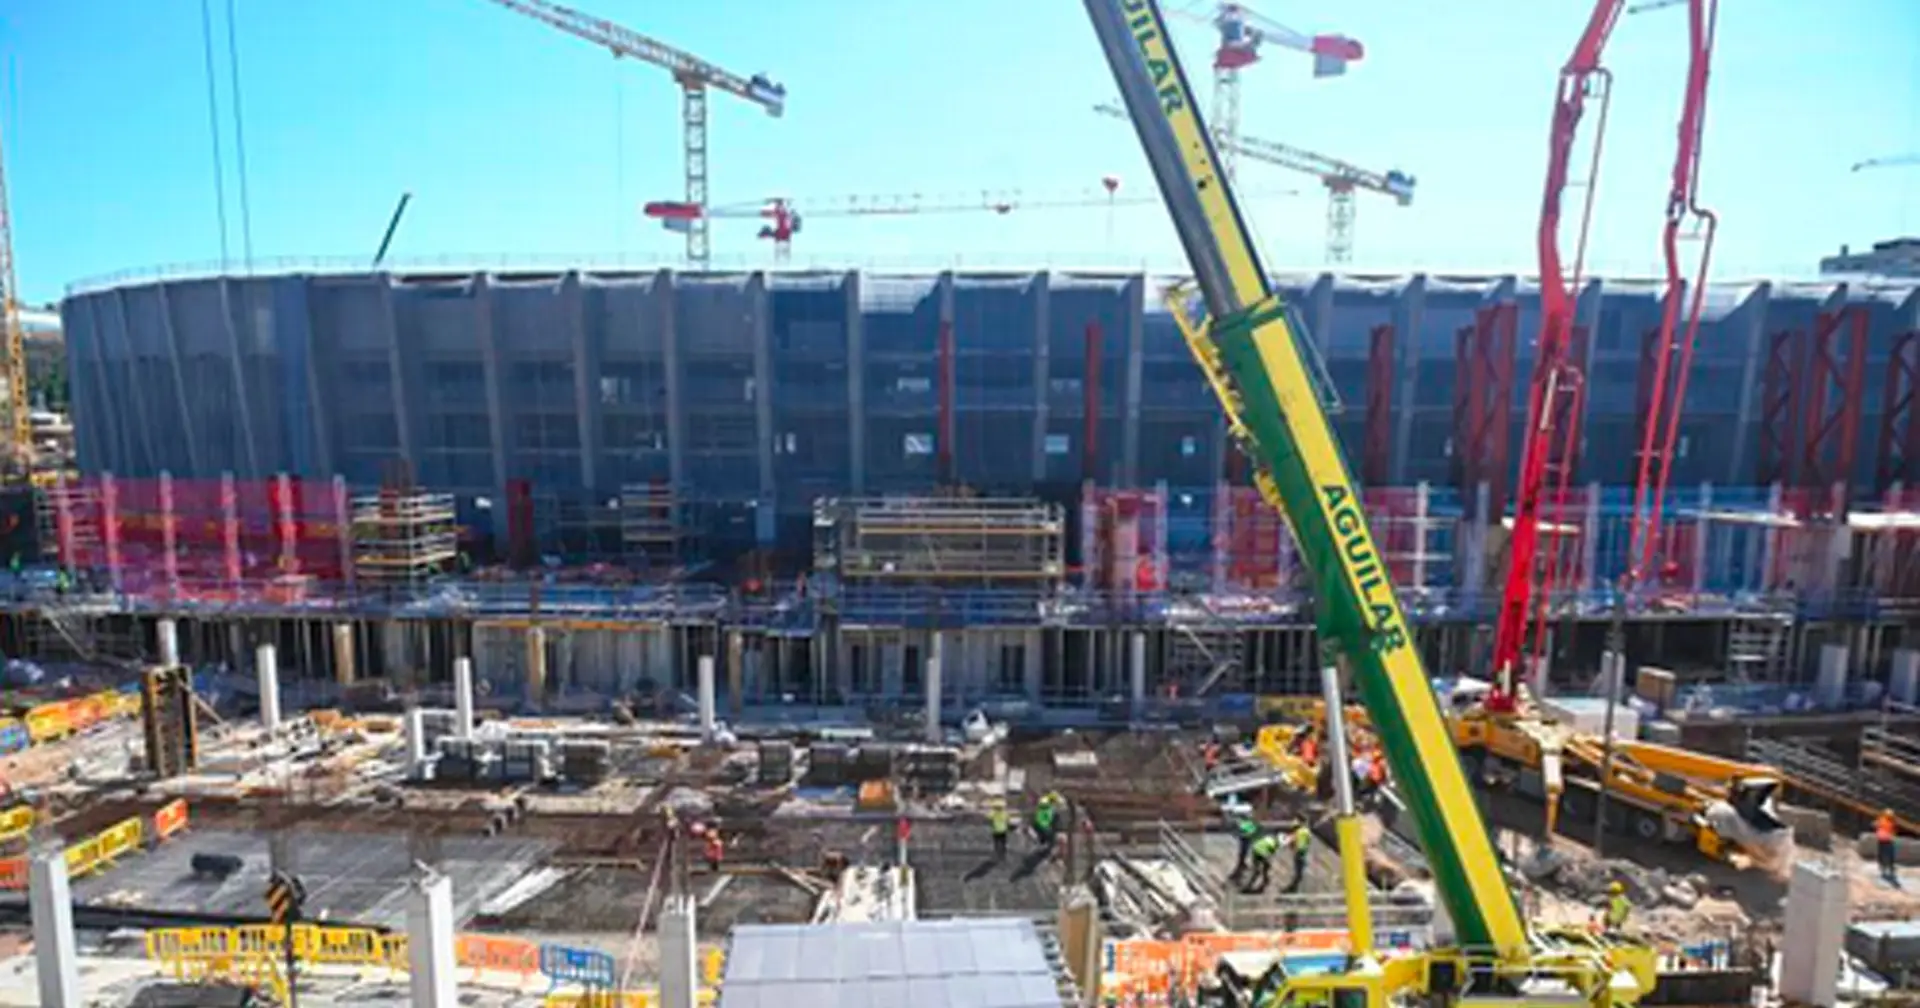 4 nouvelles photos des travaux de construction du Camp Nou – ça prend vraiment forme maintenant